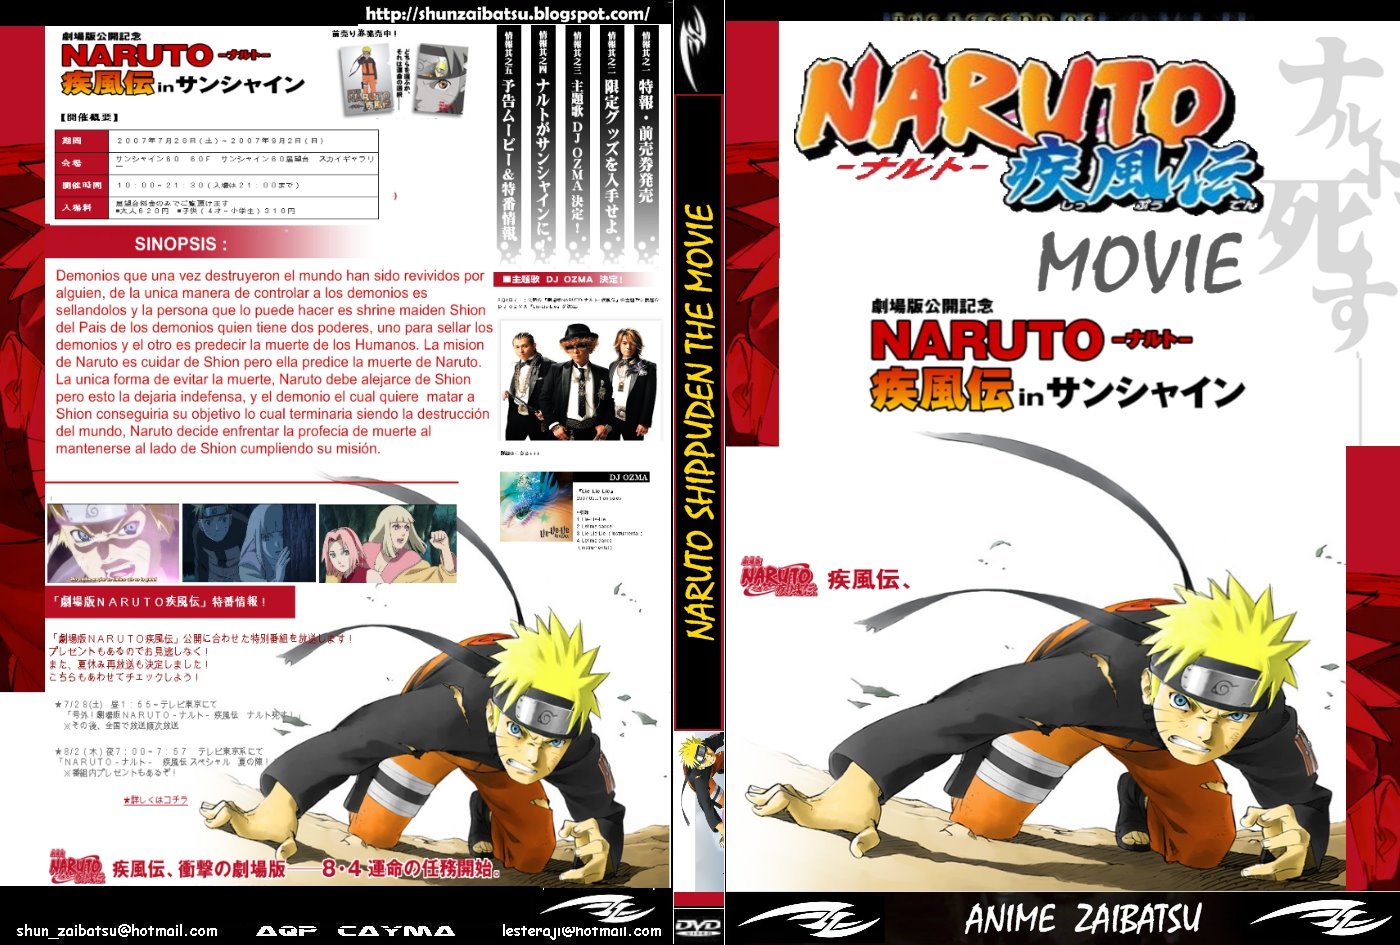  Naruto  Shippuden  The Movie  1 